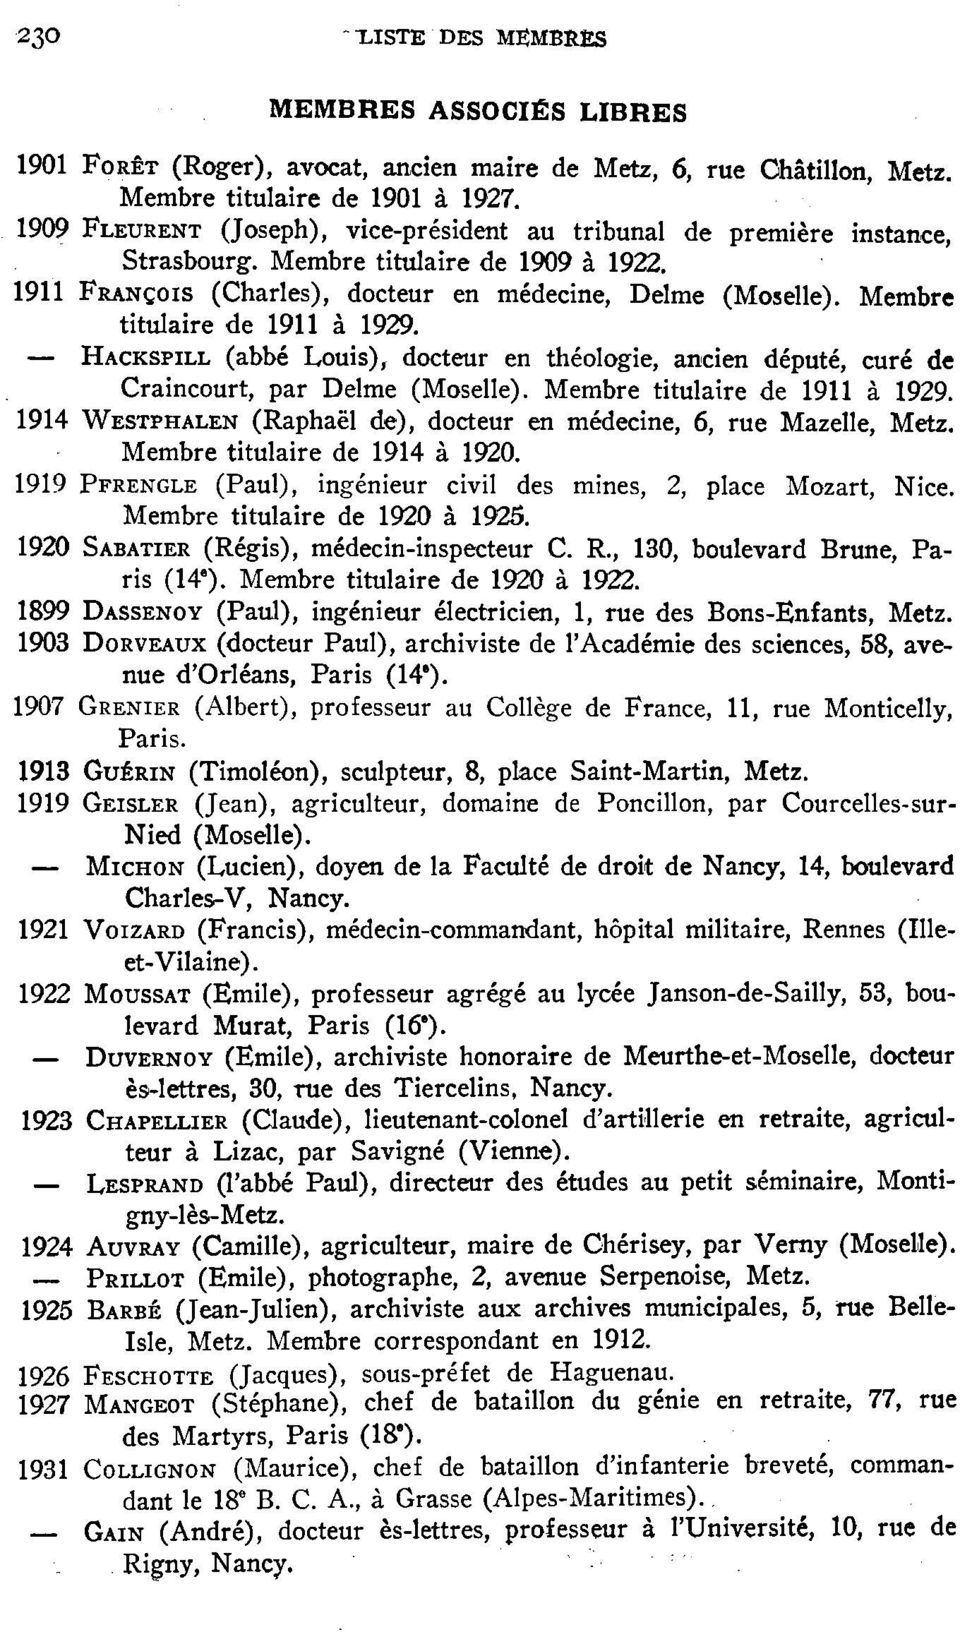 Membre titulaire de 1911 à 1929. HACKSPILL (abbé Louis), docteur en théologie, ancien député, curé de Craincourt, par Delme (Moselle). Membre titulaire de 1911 à 1929.